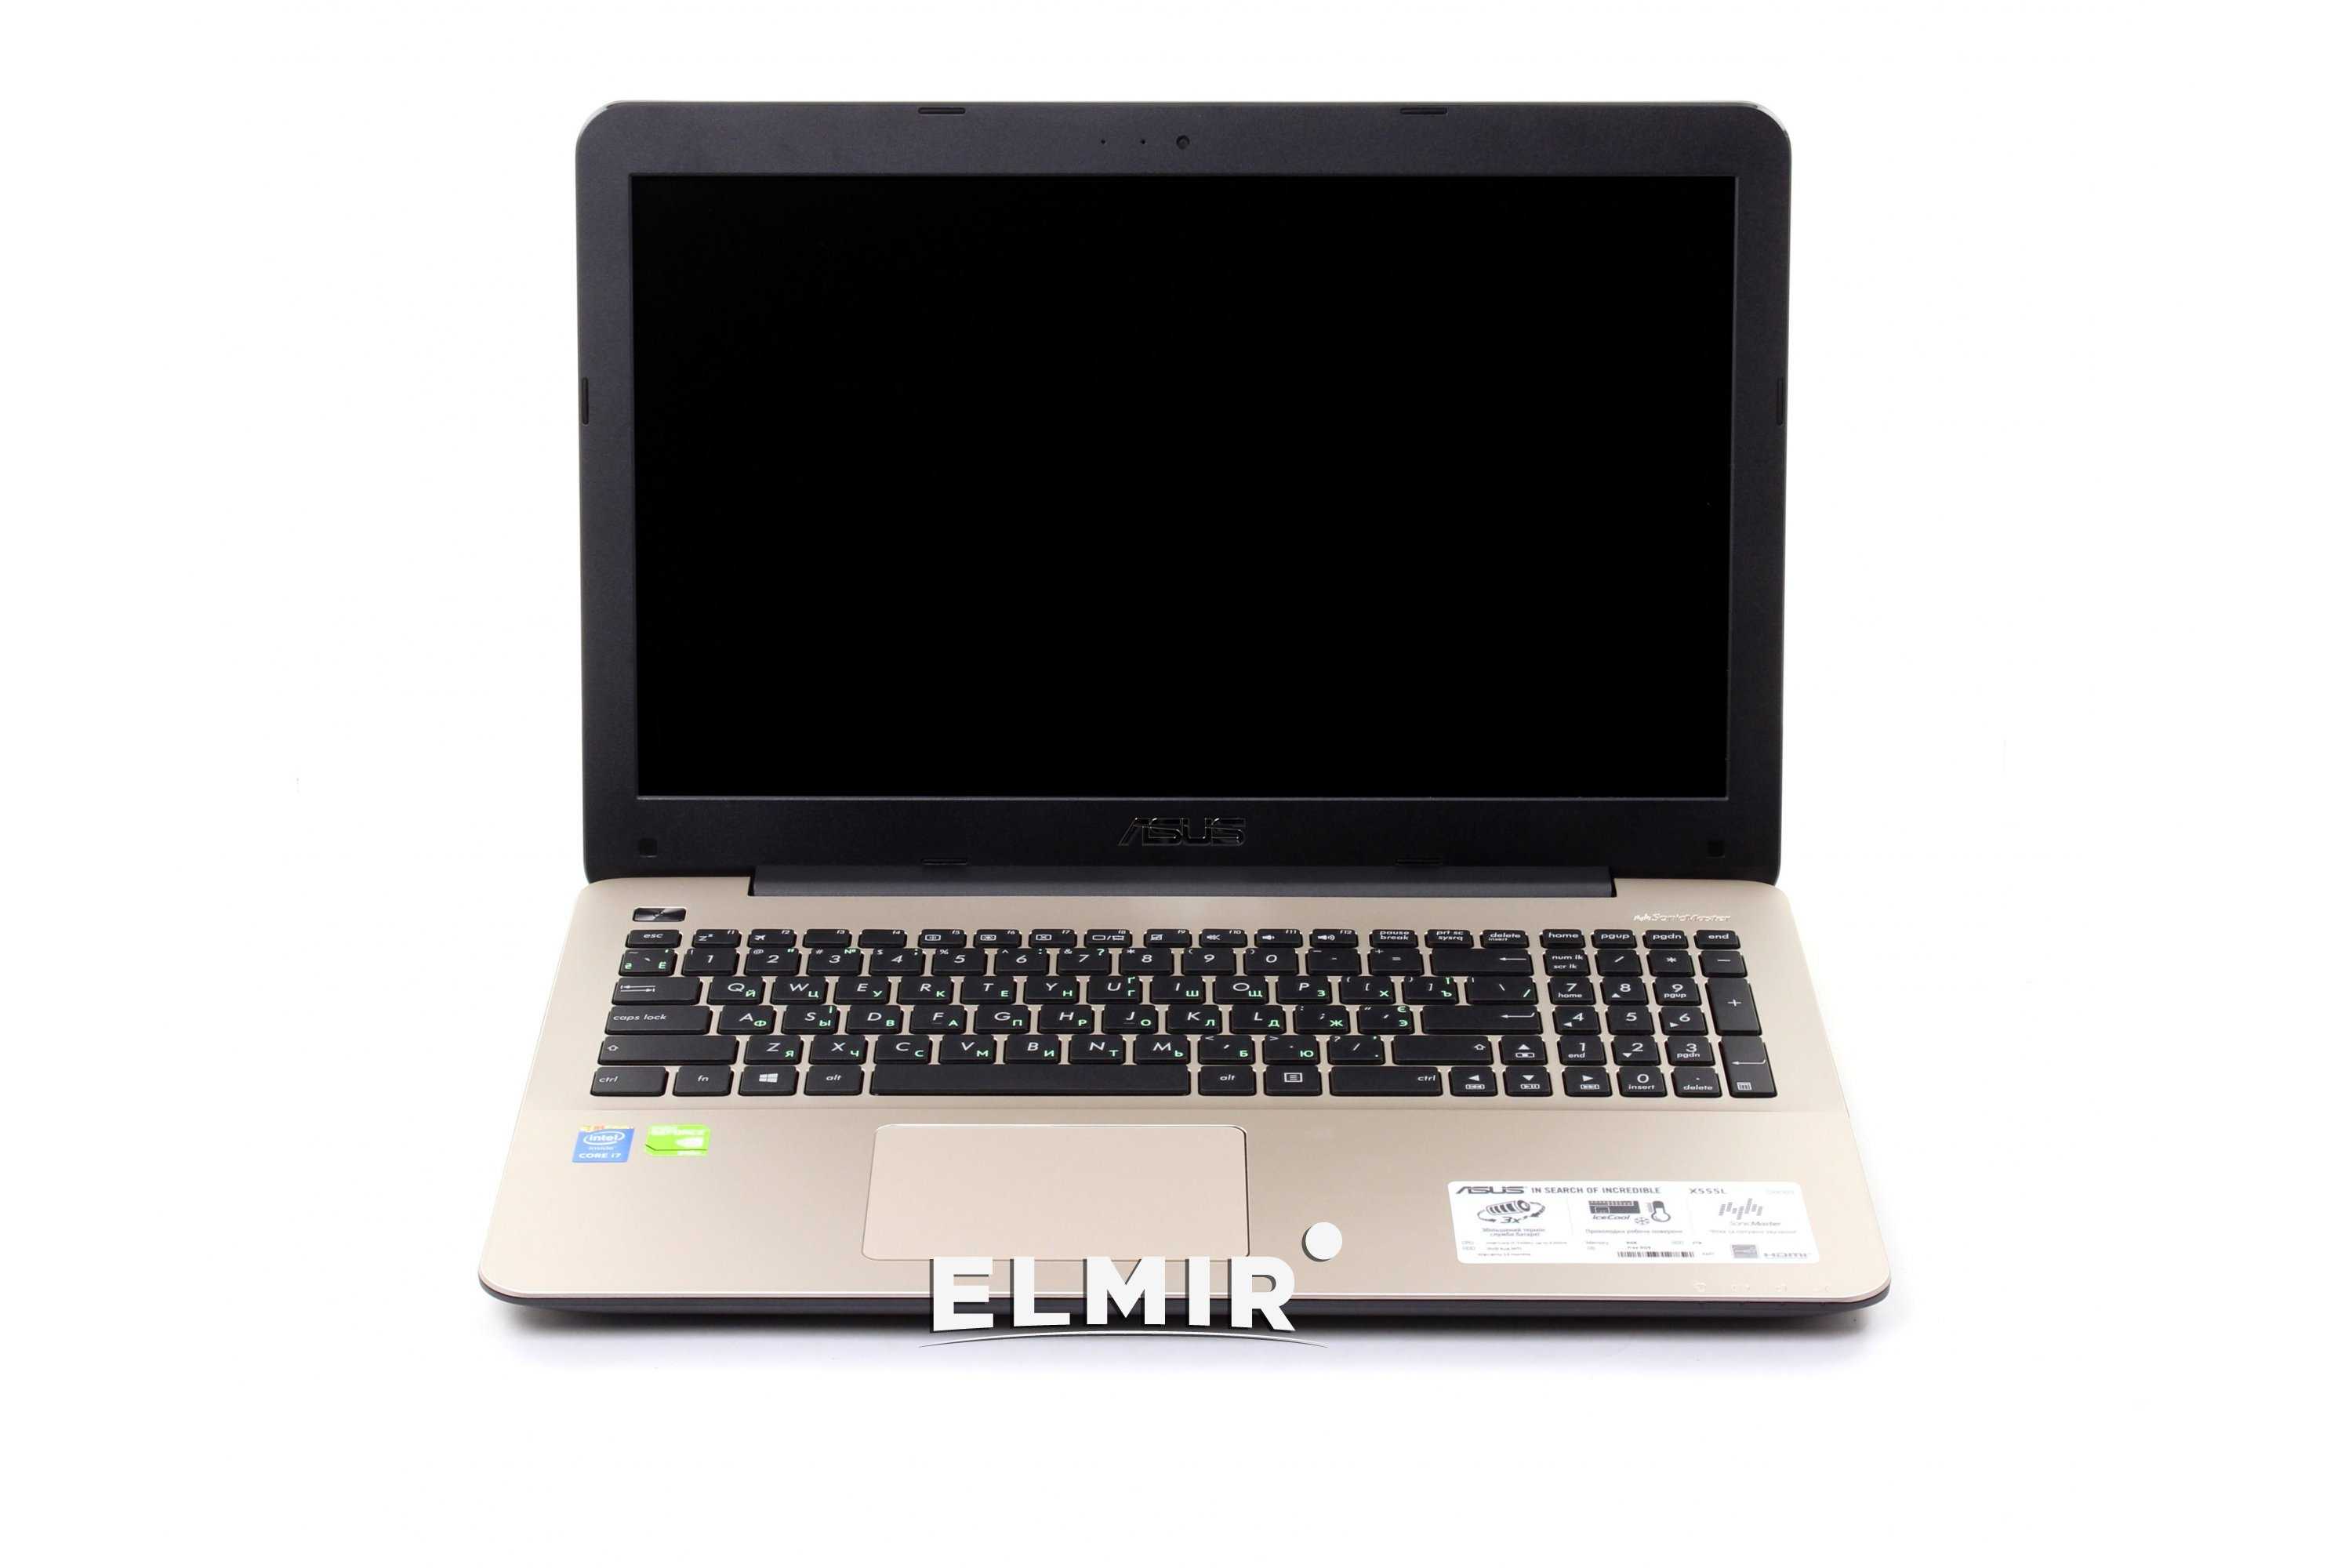 Ноутбук Asus X555LB (X555LB-XO141D) Dark Brown - подробные характеристики обзоры видео фото Цены в интернет-магазинах где можно купить ноутбук Asus X555LB (X555LB-XO141D) Dark Brown